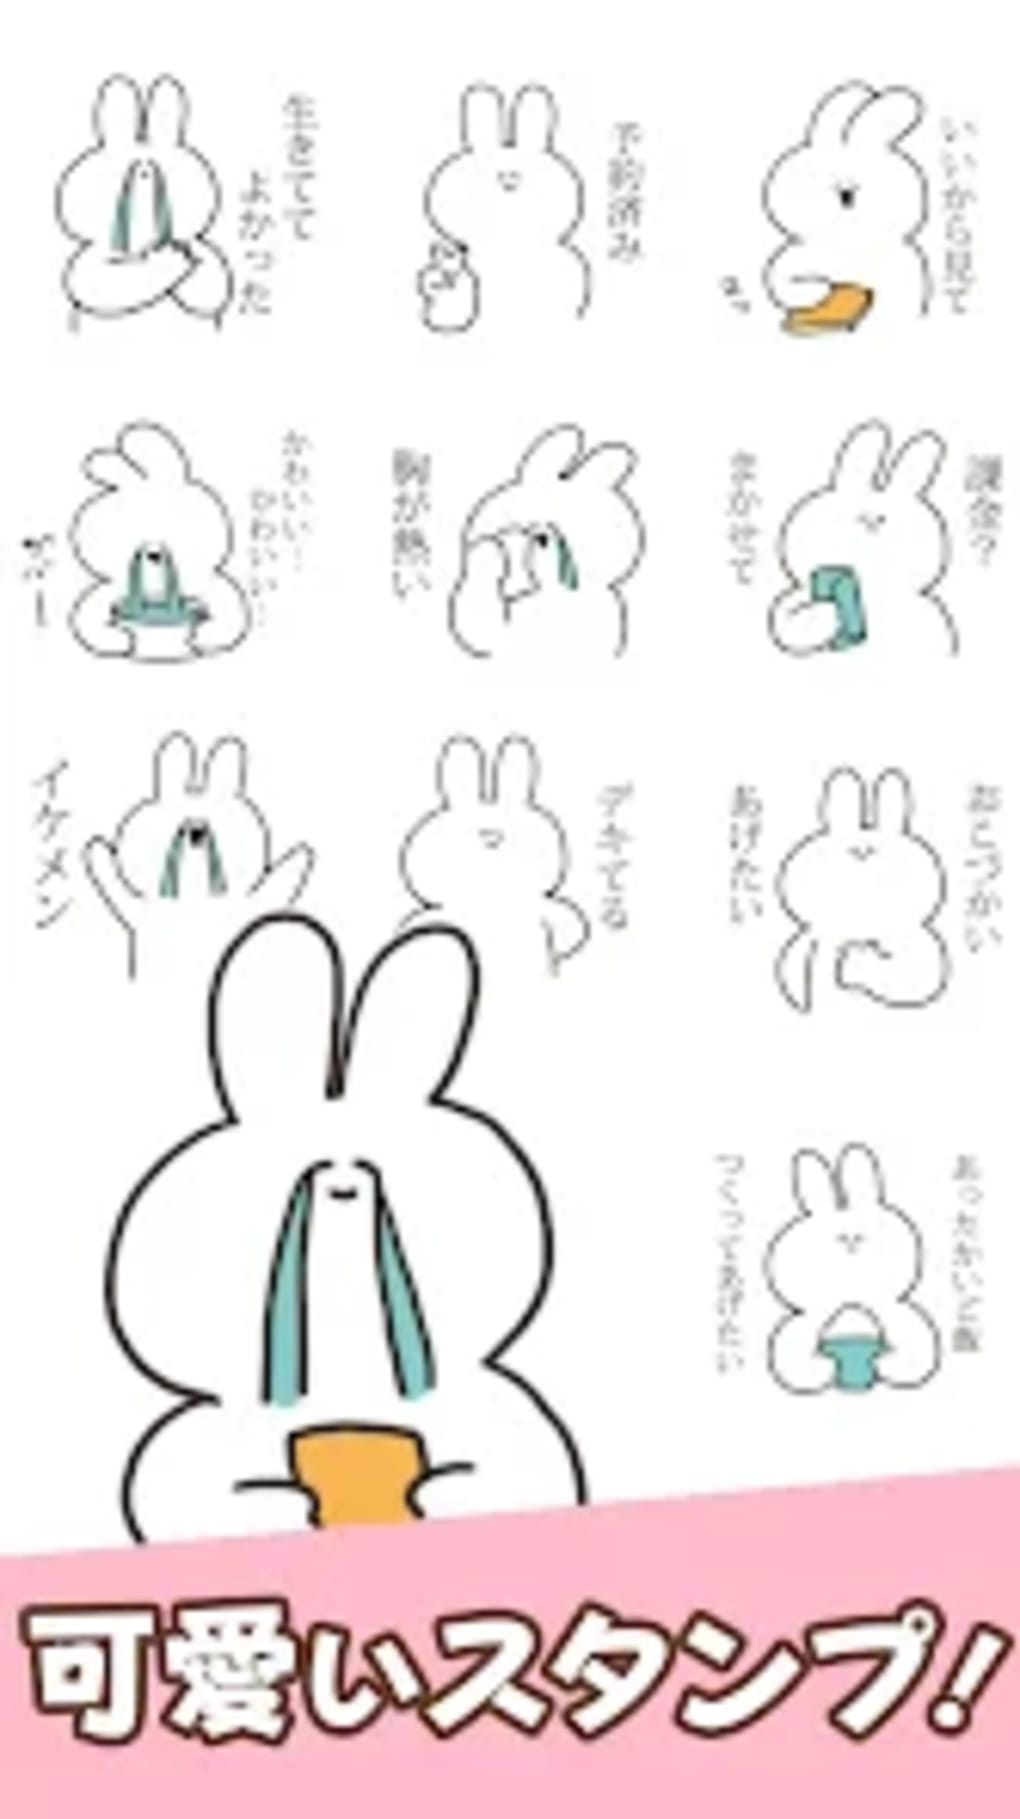 Sarcastic rabbit Stickers สำหรับ Android - ดาวน์โหลด